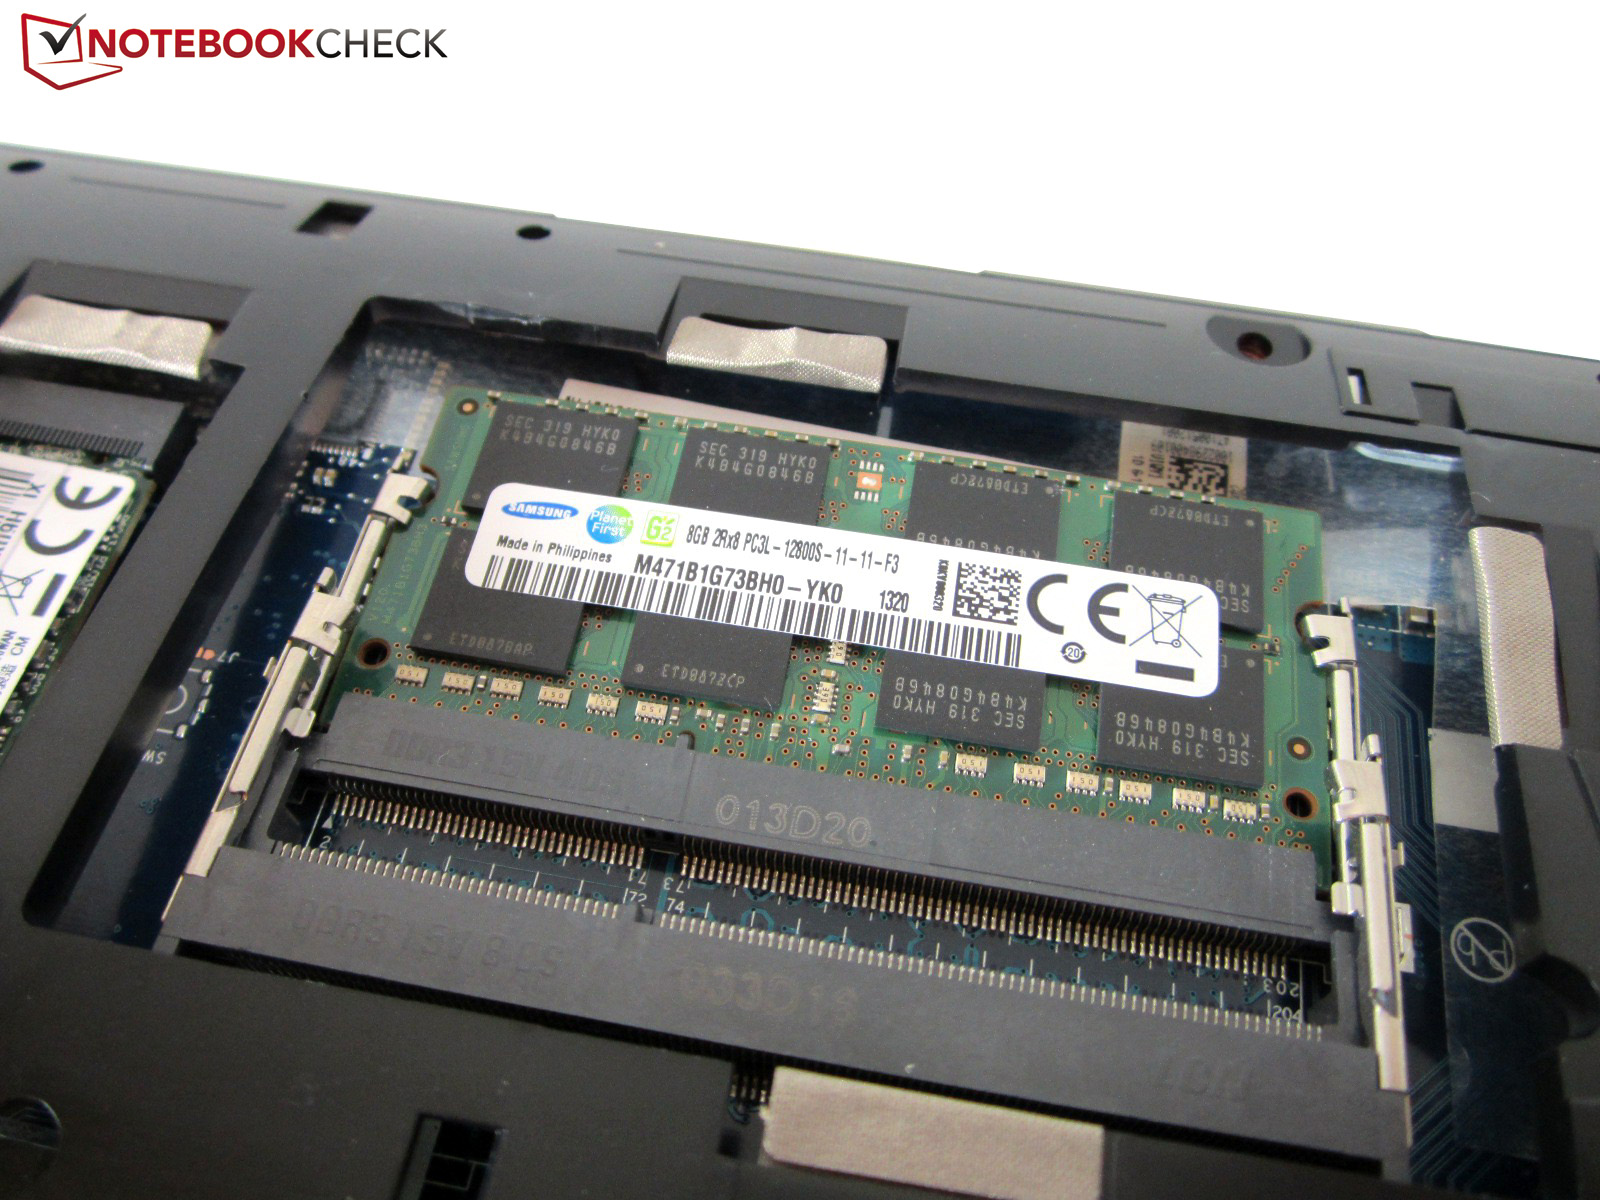 Acer увеличить оперативную память. Слот под ddr3. Ноутбук слот для оперативной памяти ддр3. Lenovo IDEAPAD y510p слот ссд. Оперативная память ddr3 для ноутбука Lenovo.